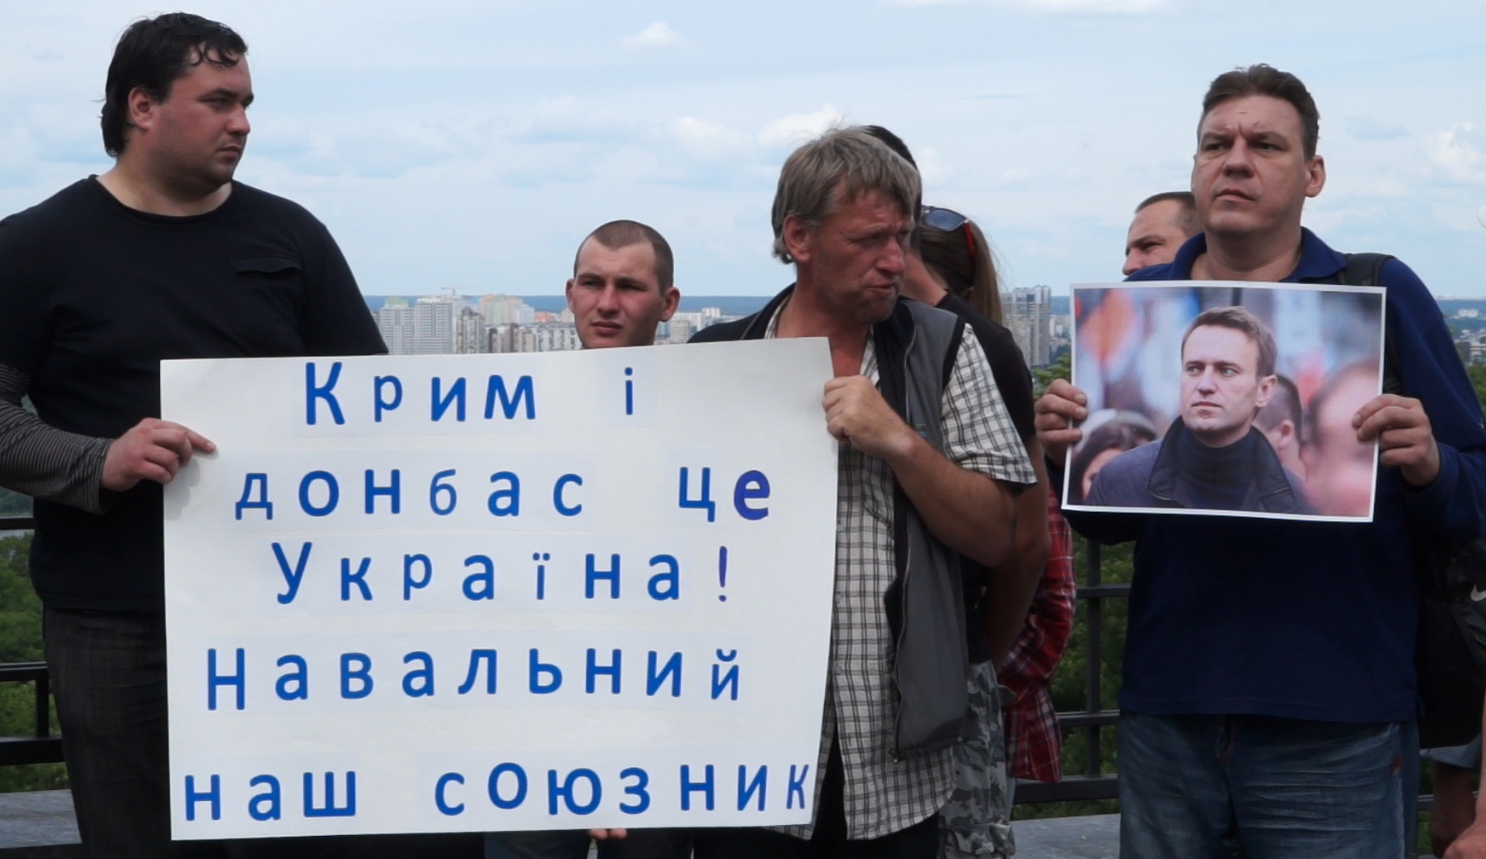 По данным украинских СМИ, на акцию пришло порядка 30 человек